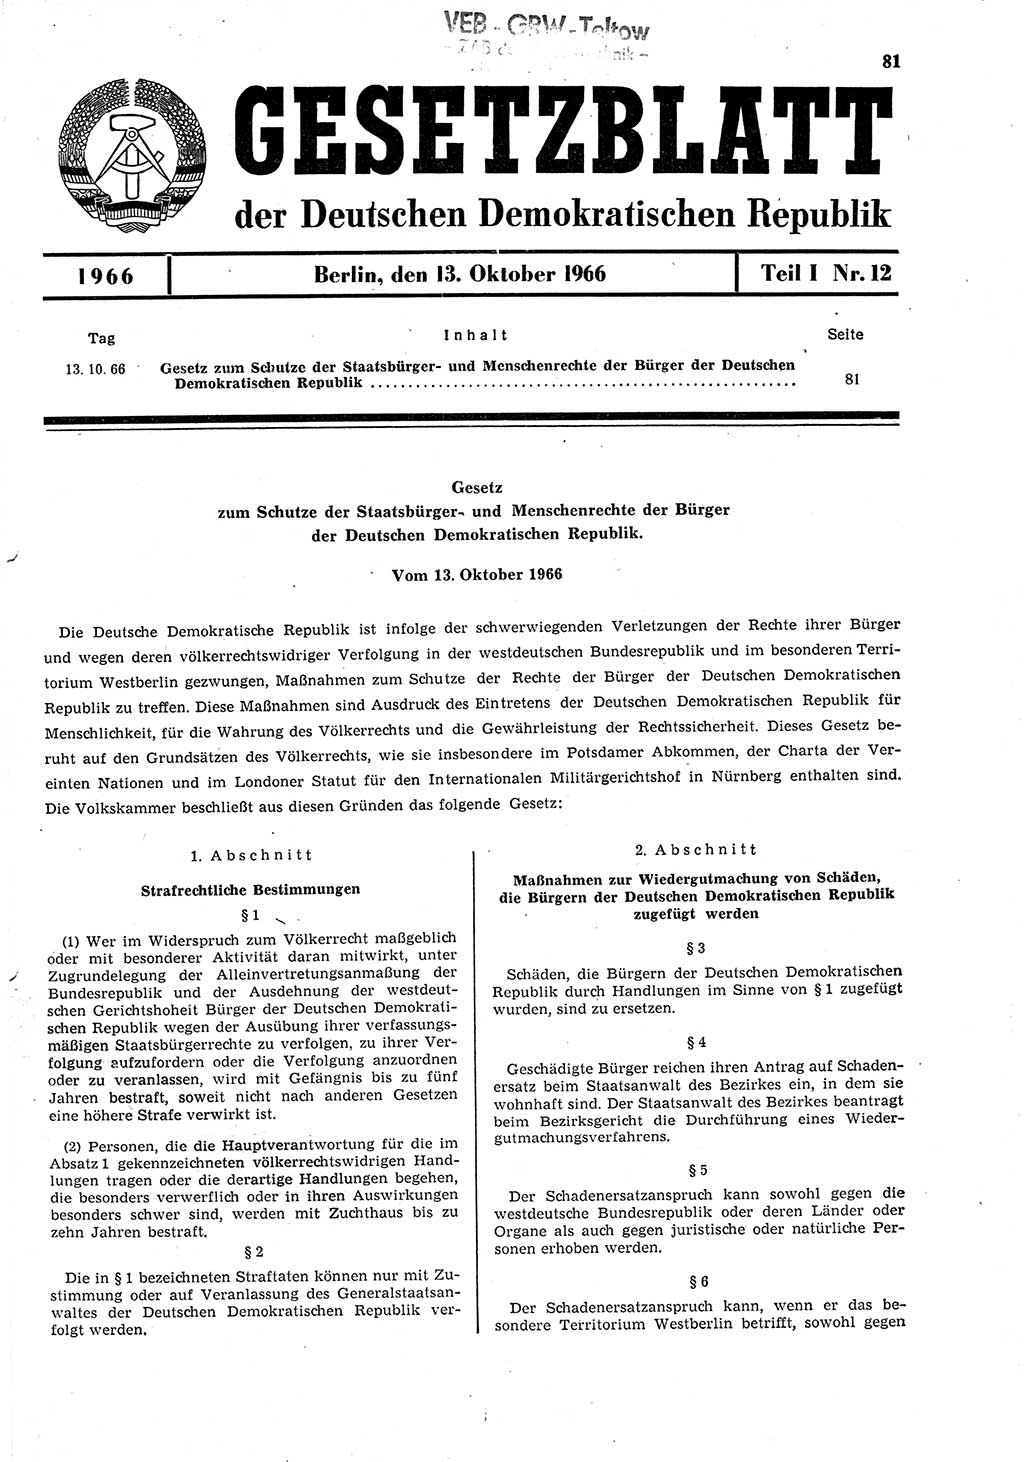 Gesetzblatt (GBl.) der Deutschen Demokratischen Republik (DDR) Teil Ⅰ 1966, Seite 81 (GBl. DDR Ⅰ 1966, S. 81)